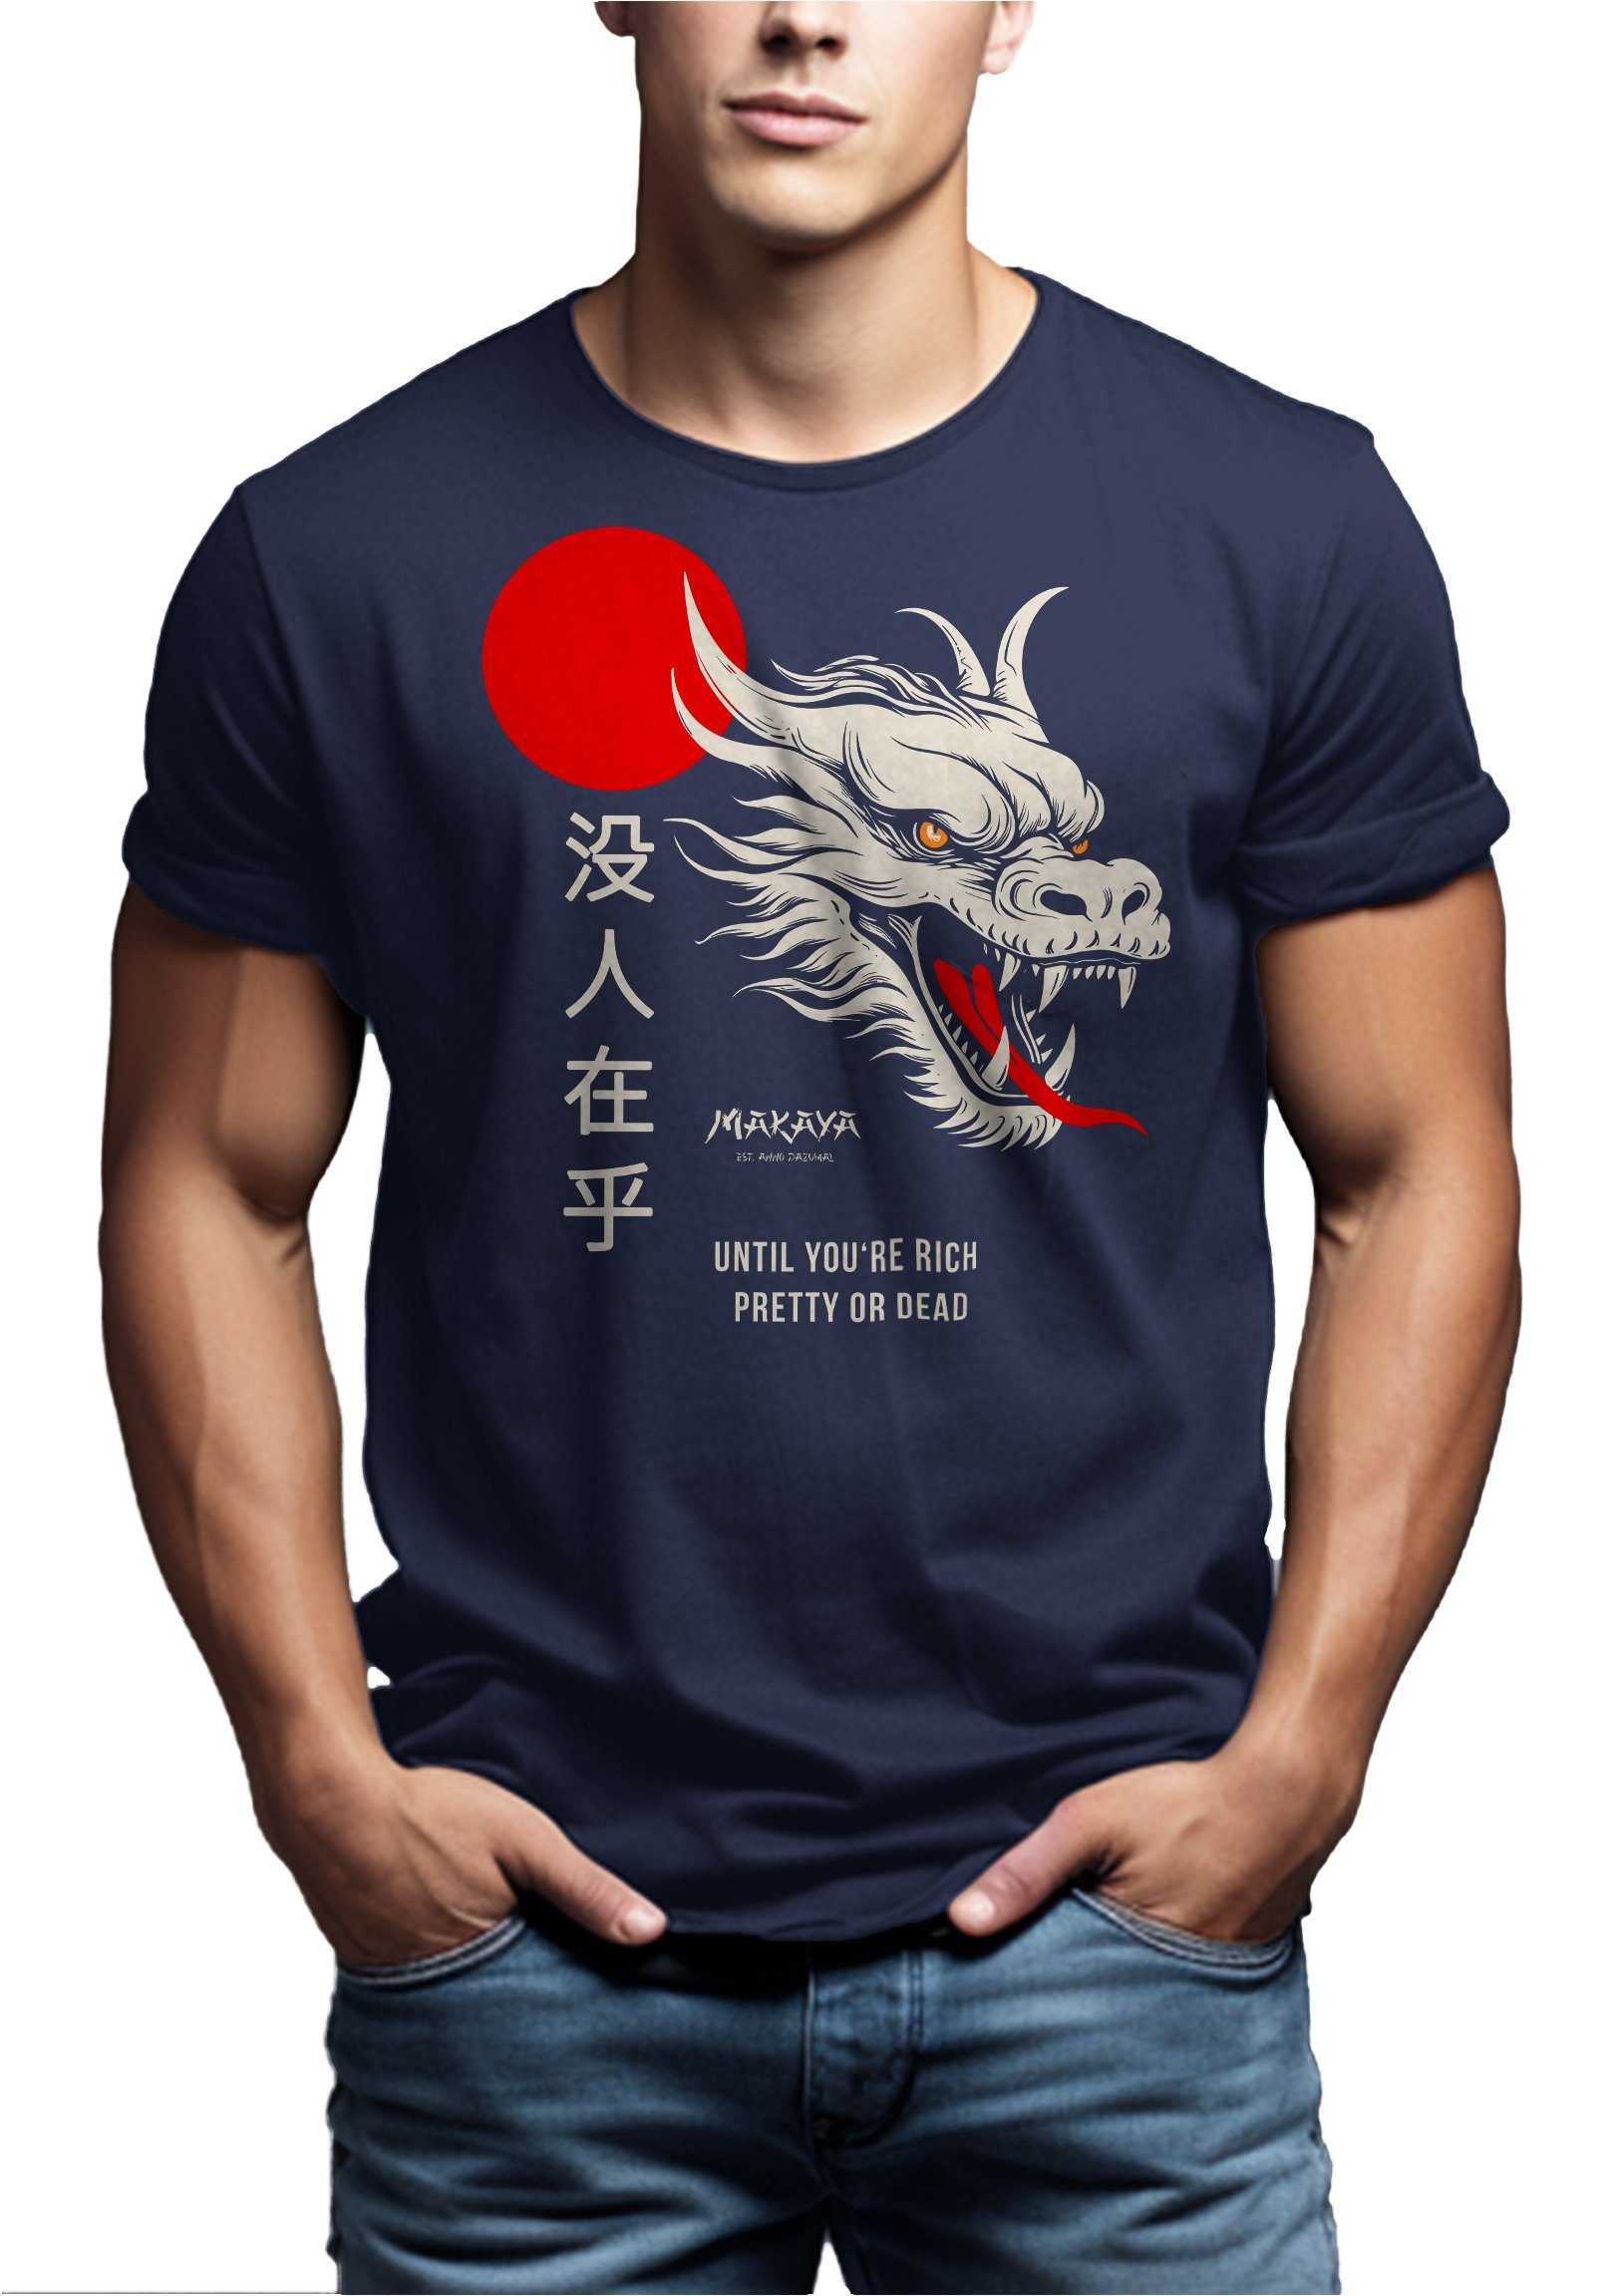 mit Nobody Geschenke Coole MAKAYA Print-Shirt Spruch Cares Drachen Chinesischen Dragon Blau Schriftzeichen